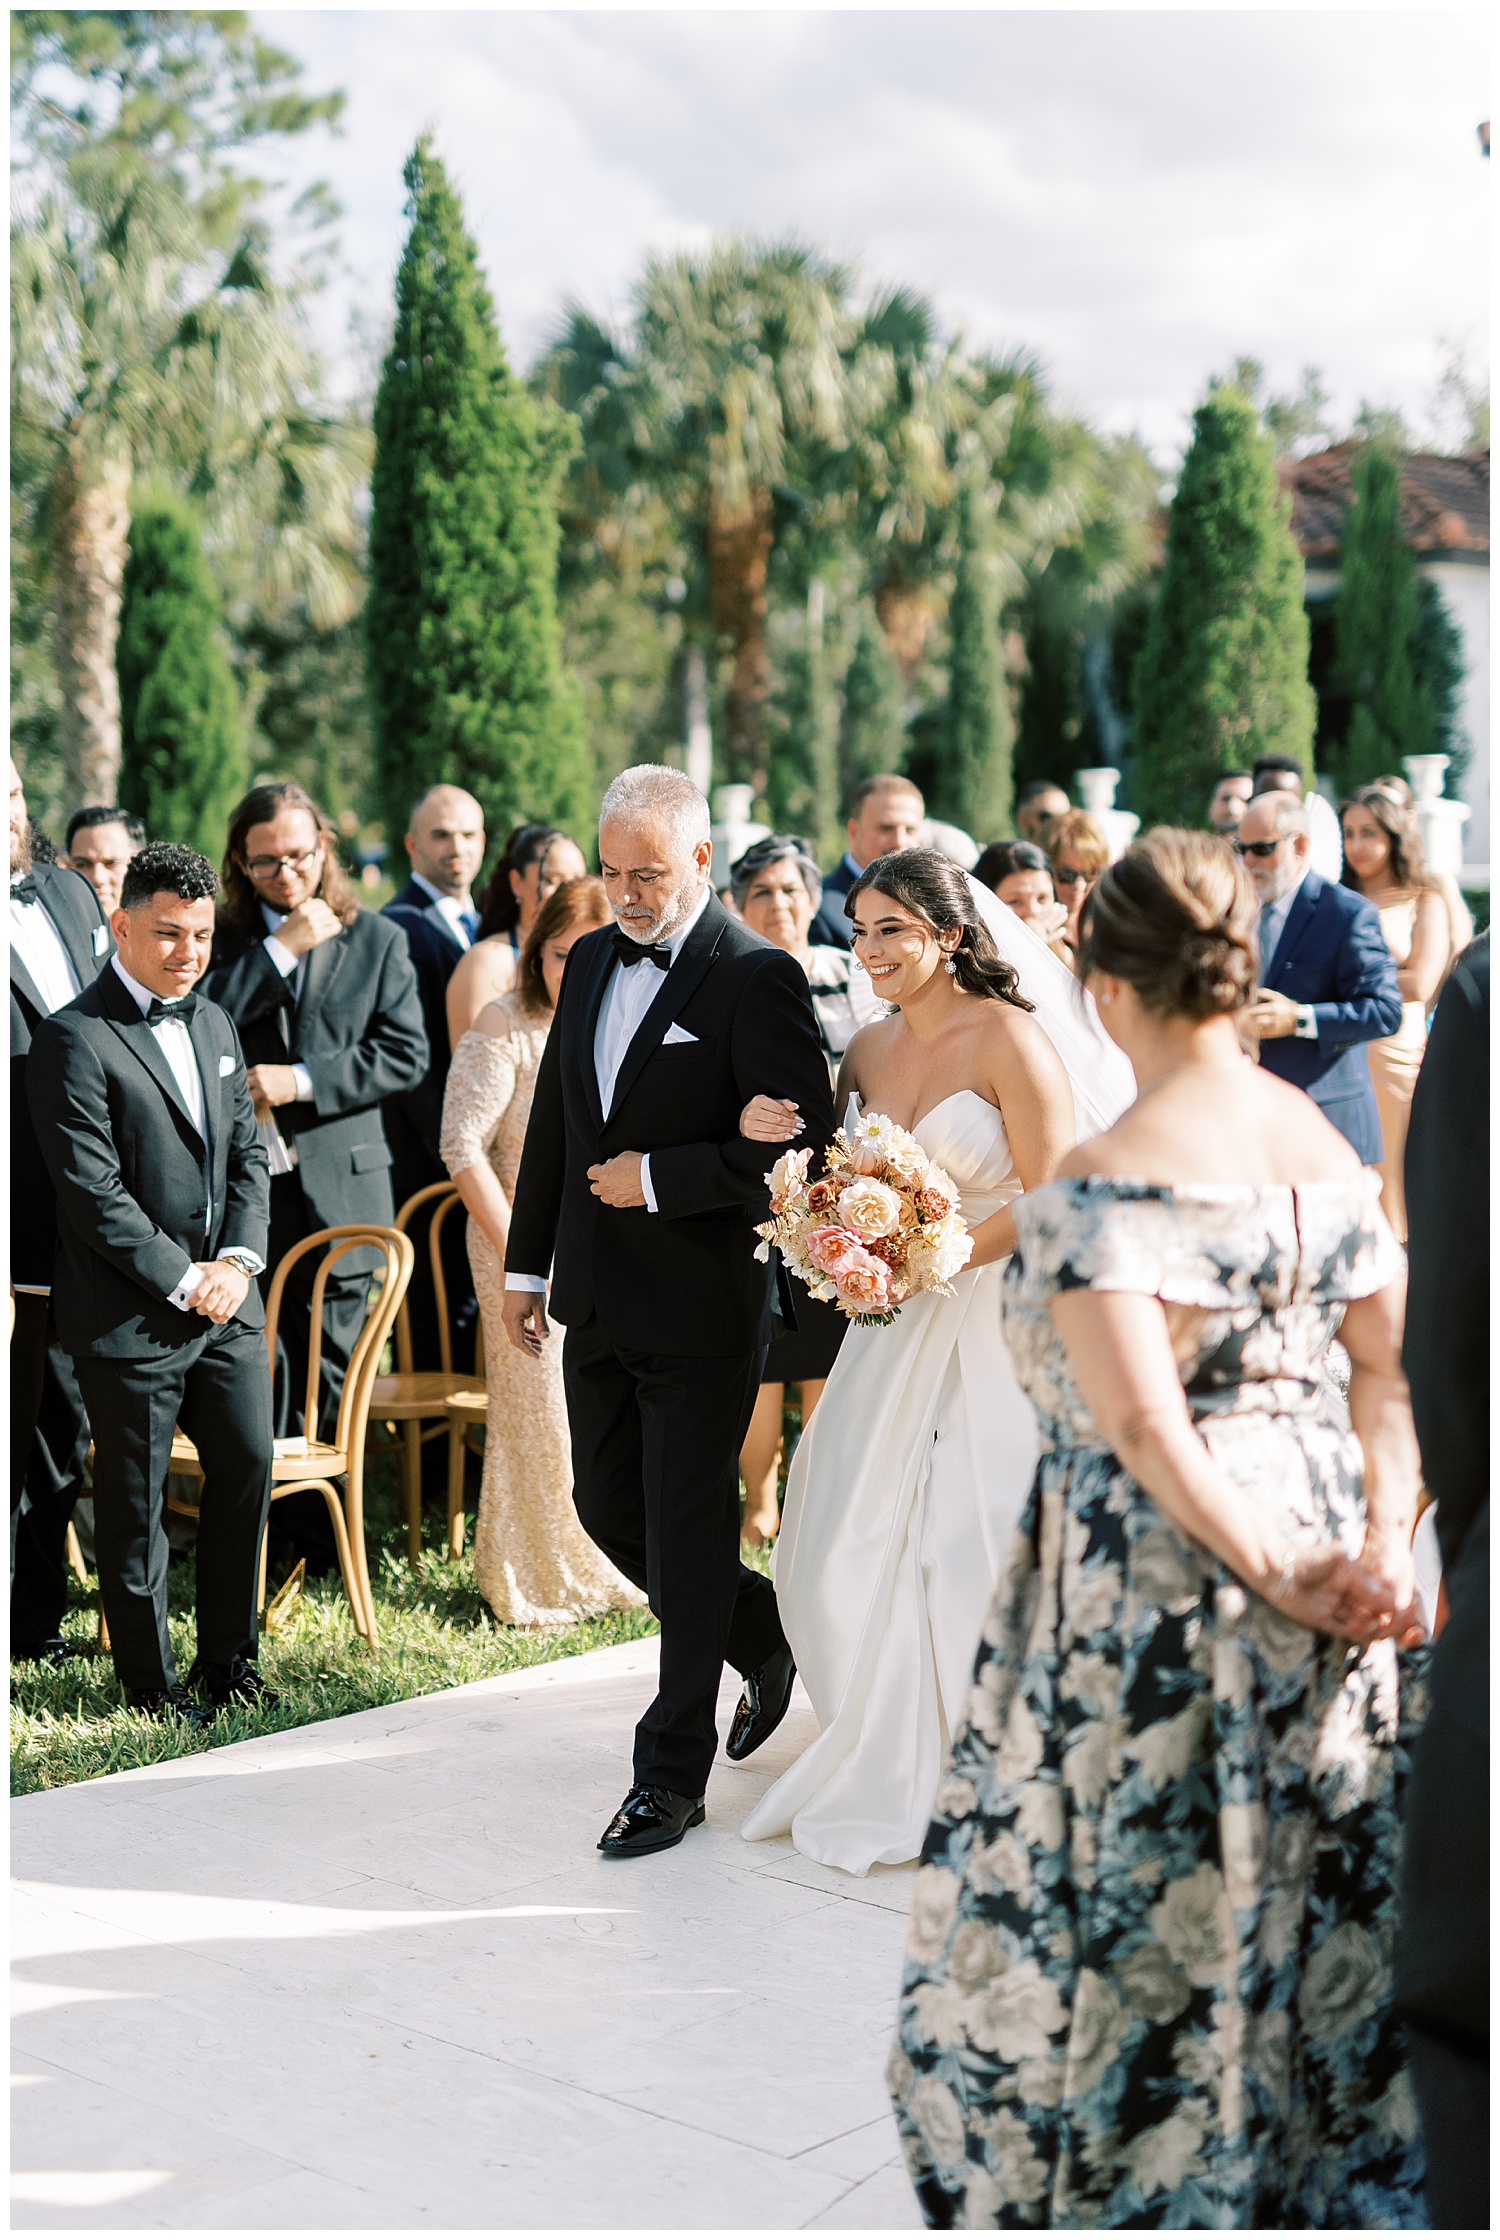 Wedding ceremony at La Casa Toscana